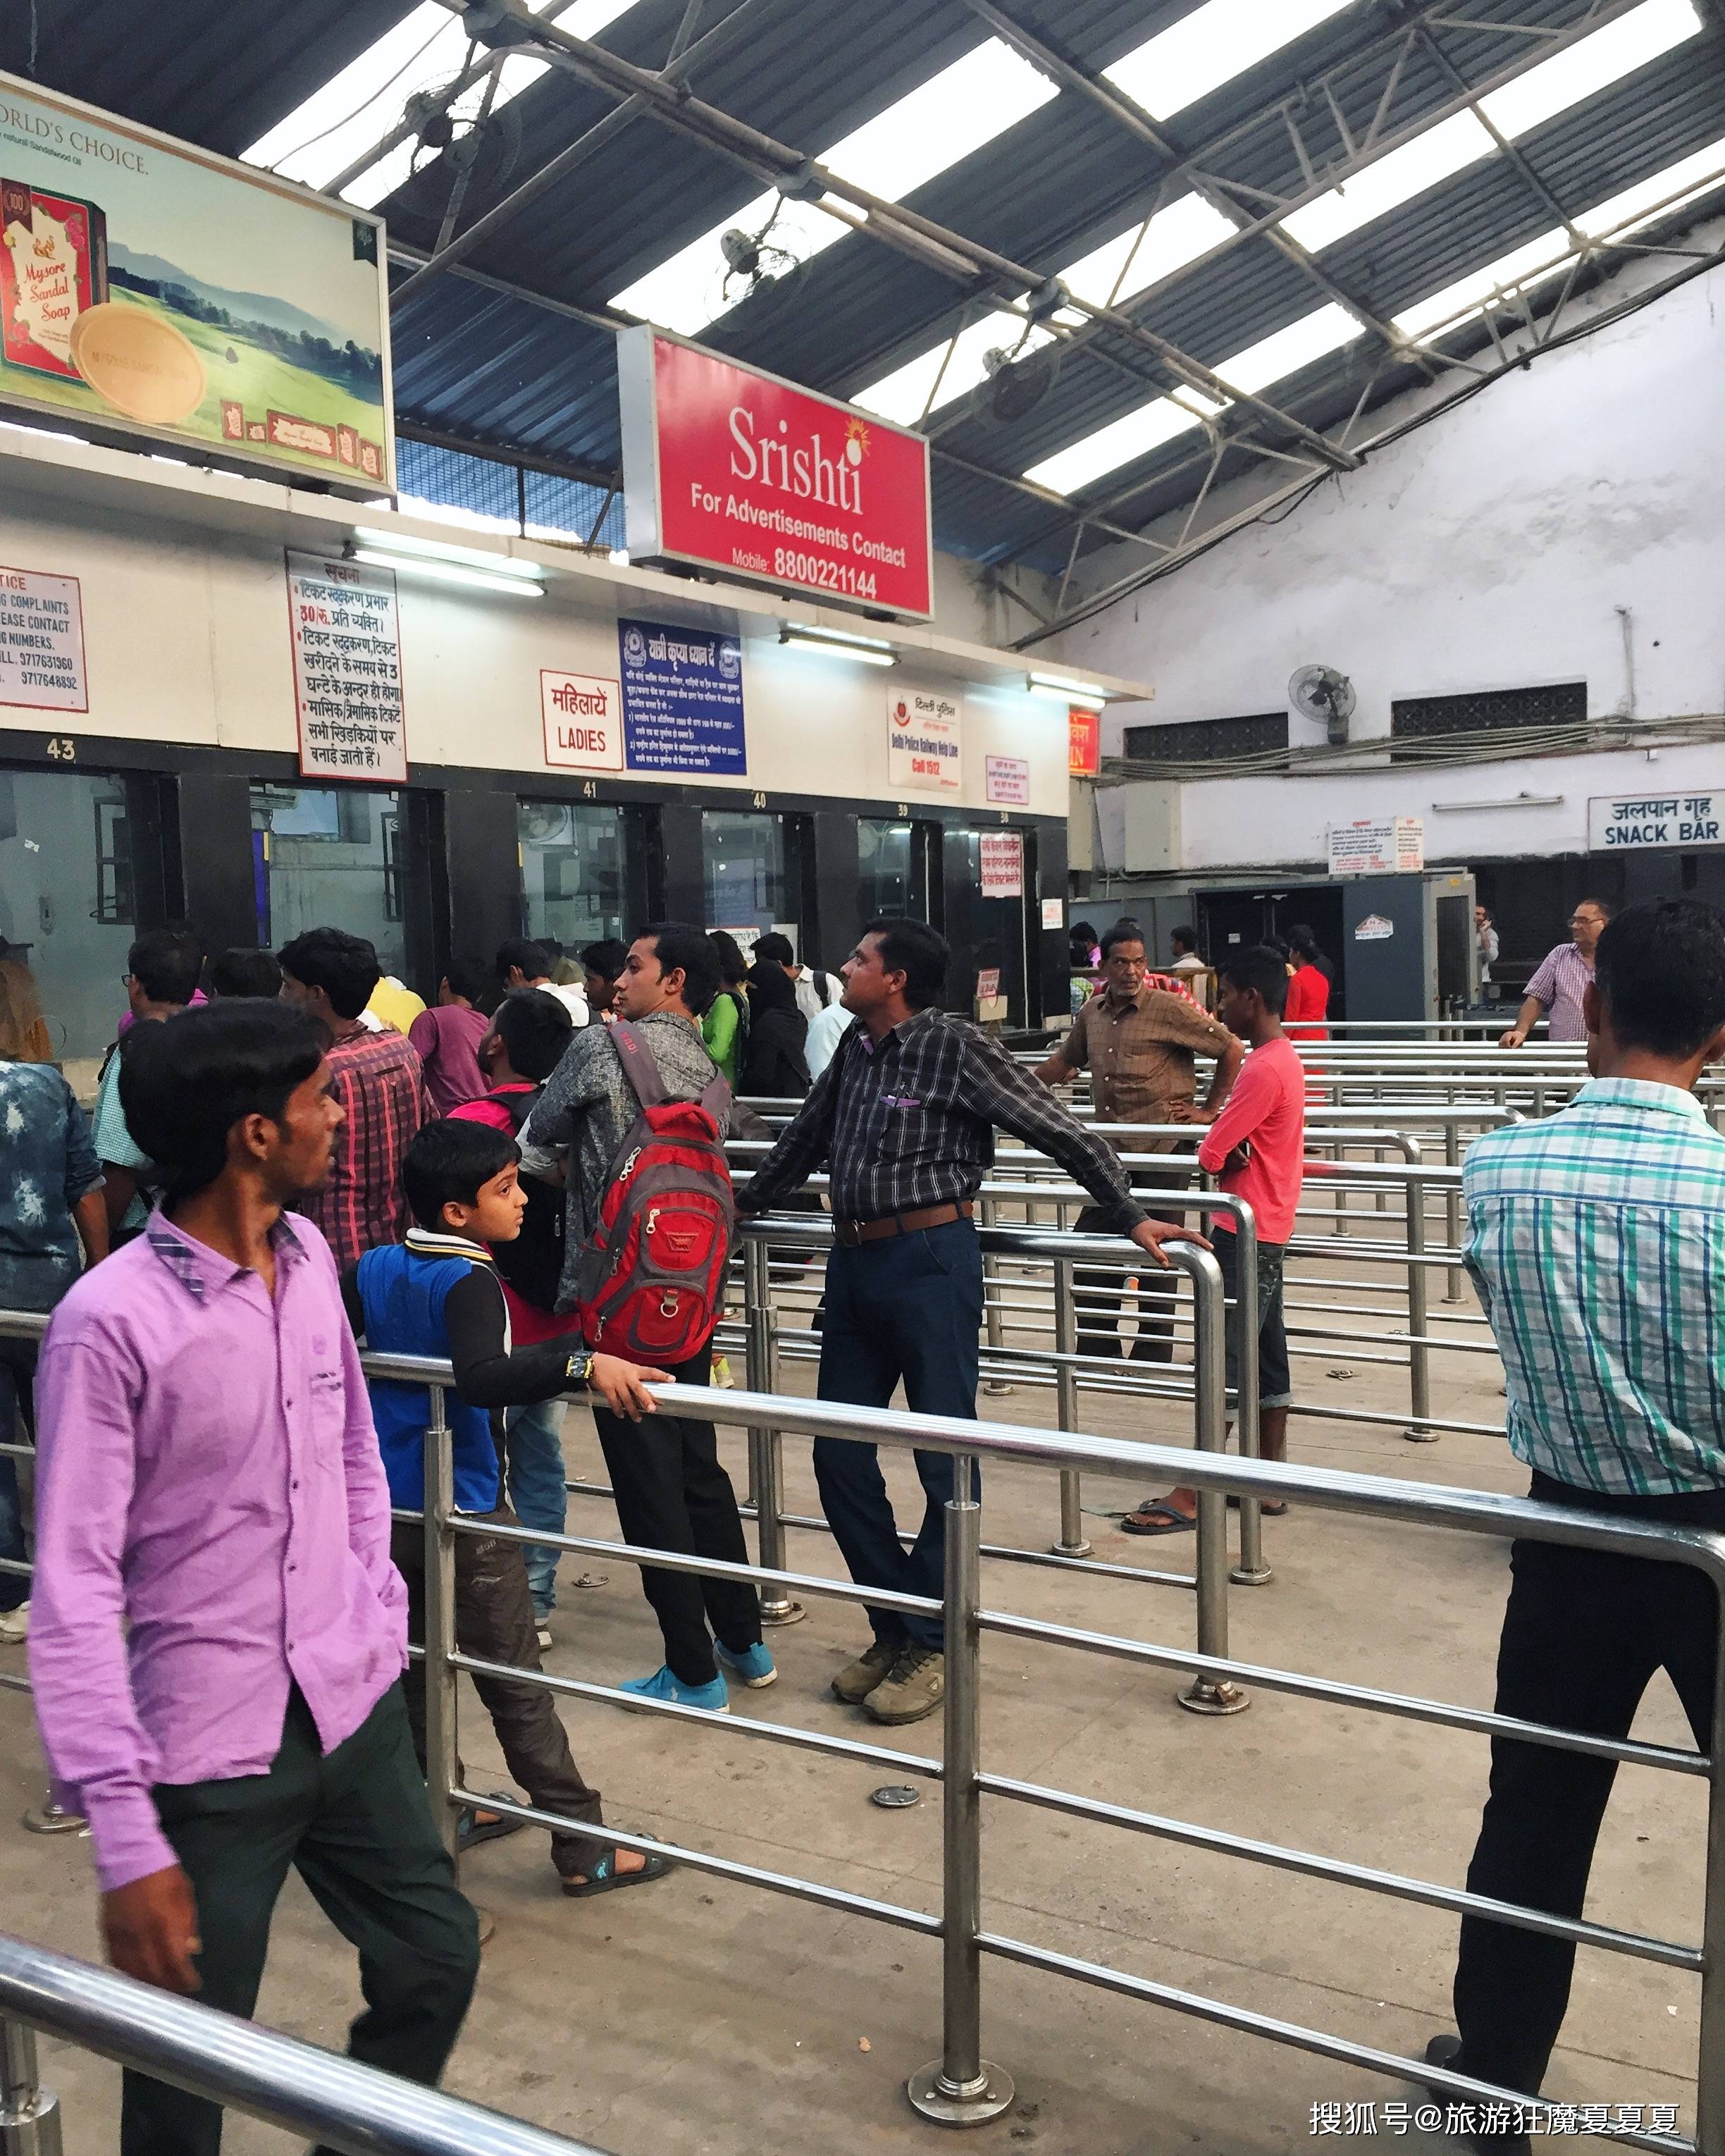 实拍印度首都新德里火车站，脏乱程度宛如贫民窟，但外国人有优待